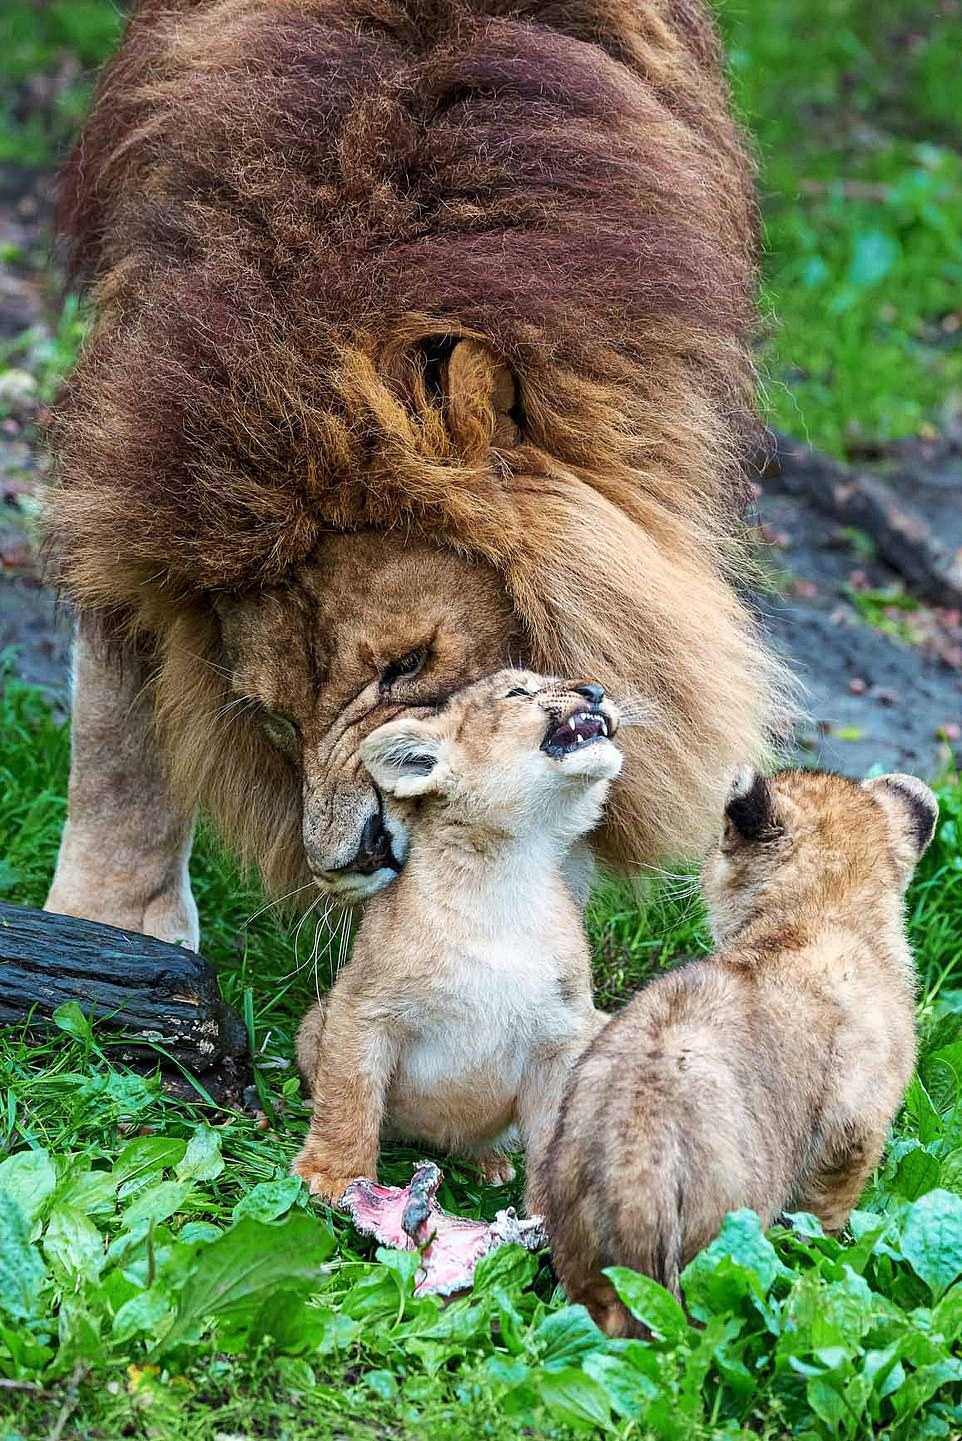 O pai leão luta para cuidar de 5 filhotes rebeldes enquanto a mãe se recupera do ataque de outra leoa